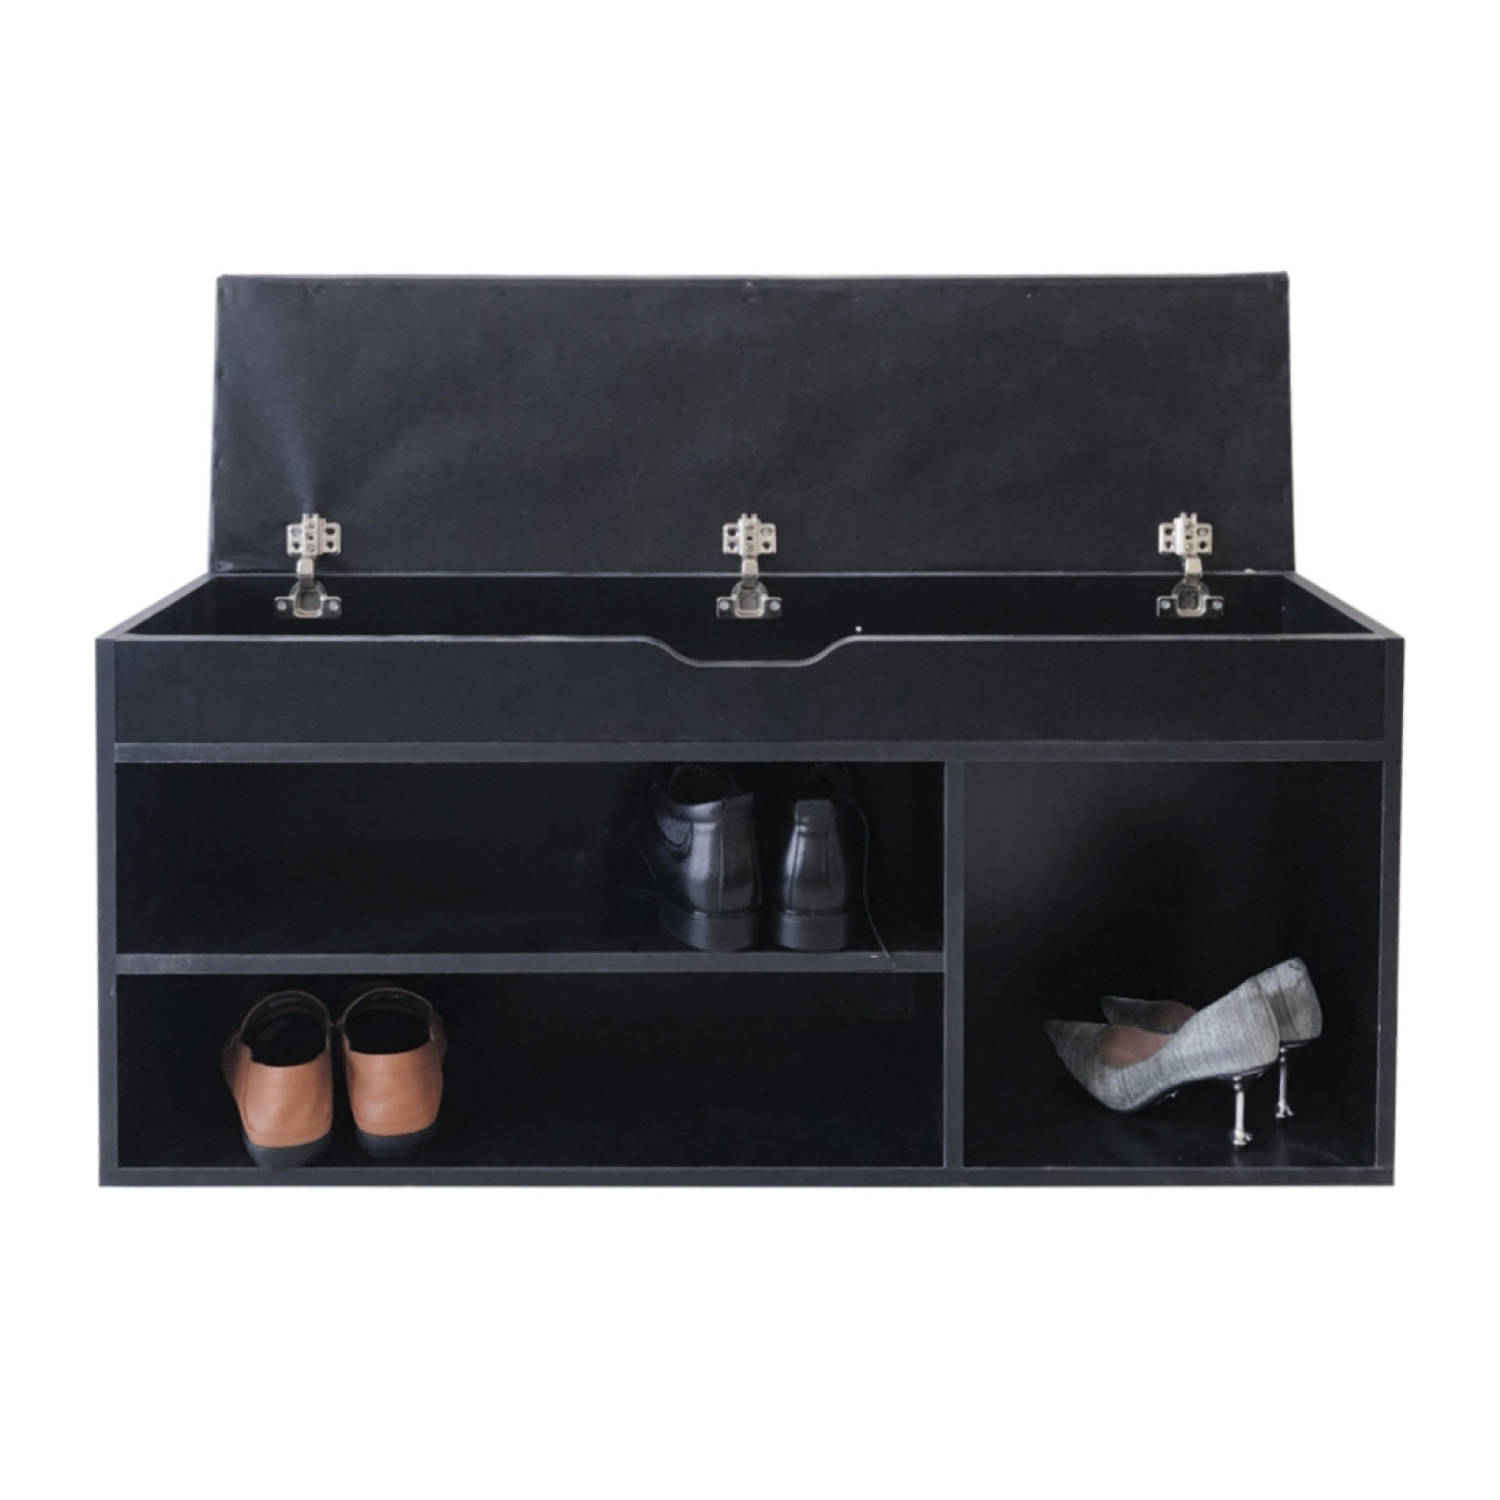 Schoenenkast met opbergruimte - schoenenrek - schoenenbankje - zwart